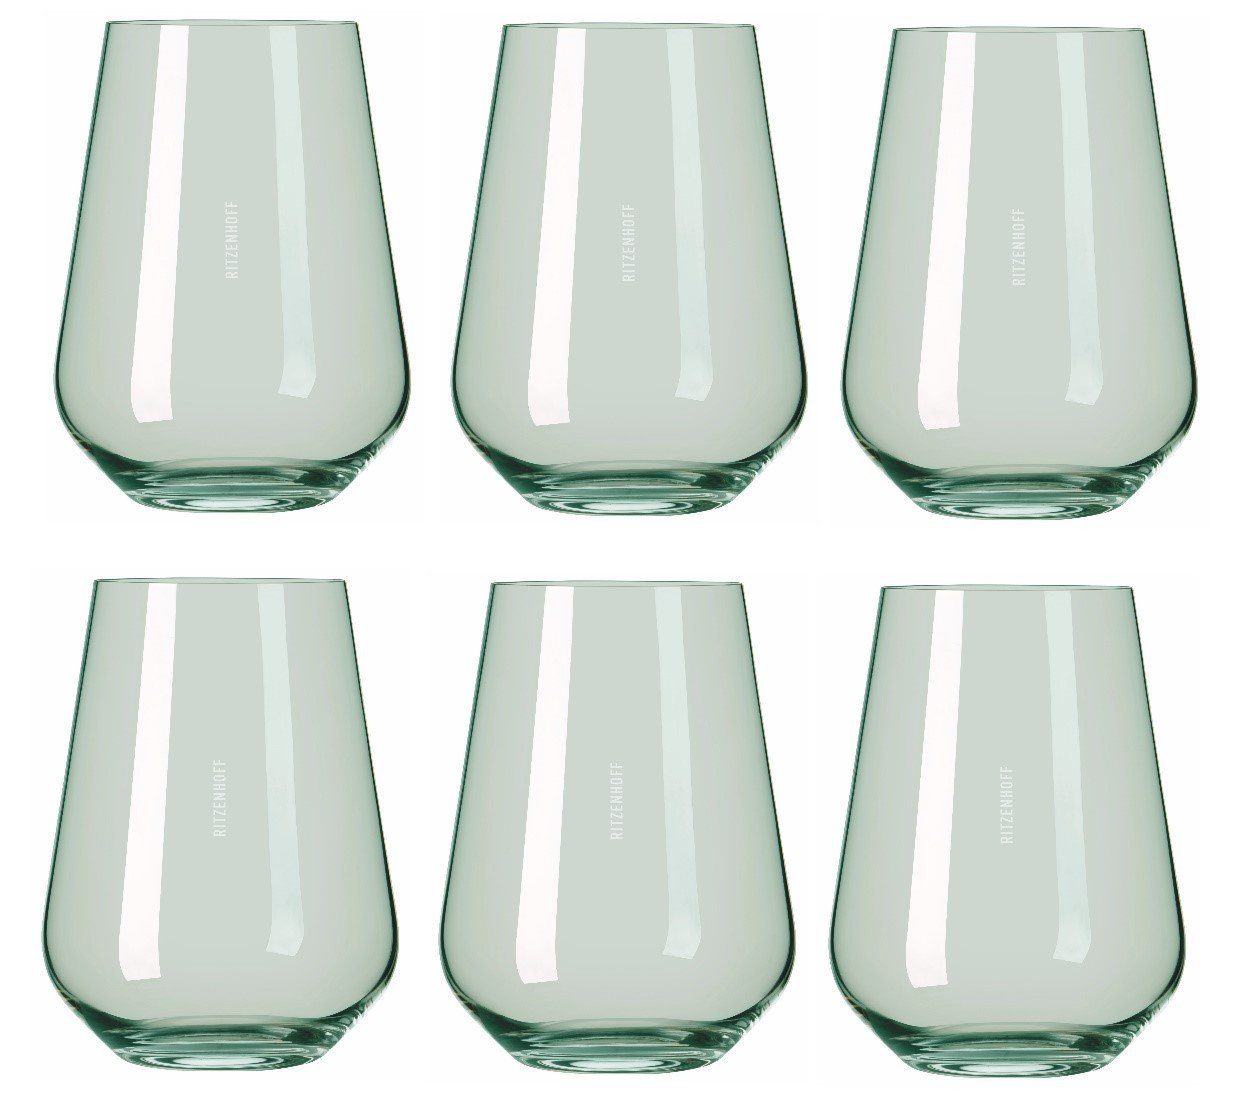 Ritzenhoff Glas Fjordlicht, Glas, Grün H:12.4cm D:9.3cm Glas, Passende  Weißwein‐ und Rotweingläser derselben Kollektion erhältlich | Gläser